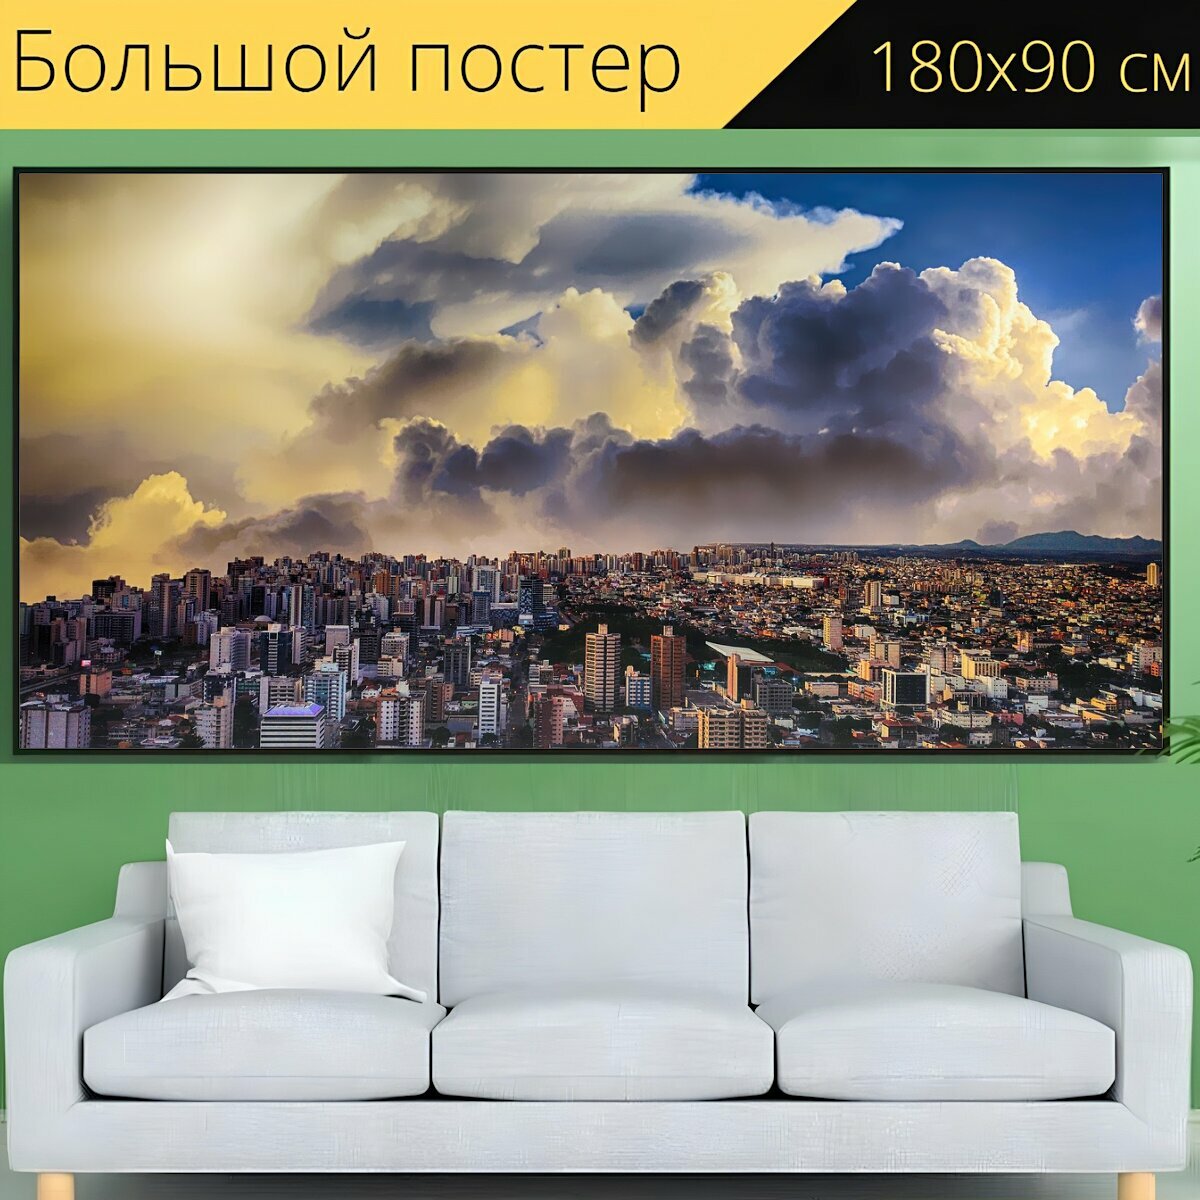 Большой постер "Город, небо, городской пейзаж" 180 x 90 см. для интерьера